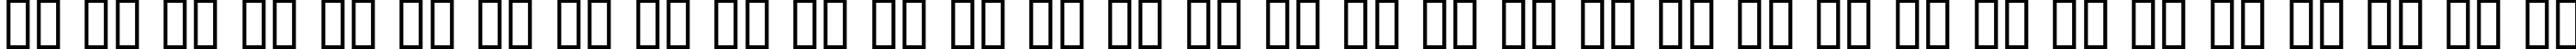 Пример написания русского алфавита шрифтом Dumbledor 3 Cut Down